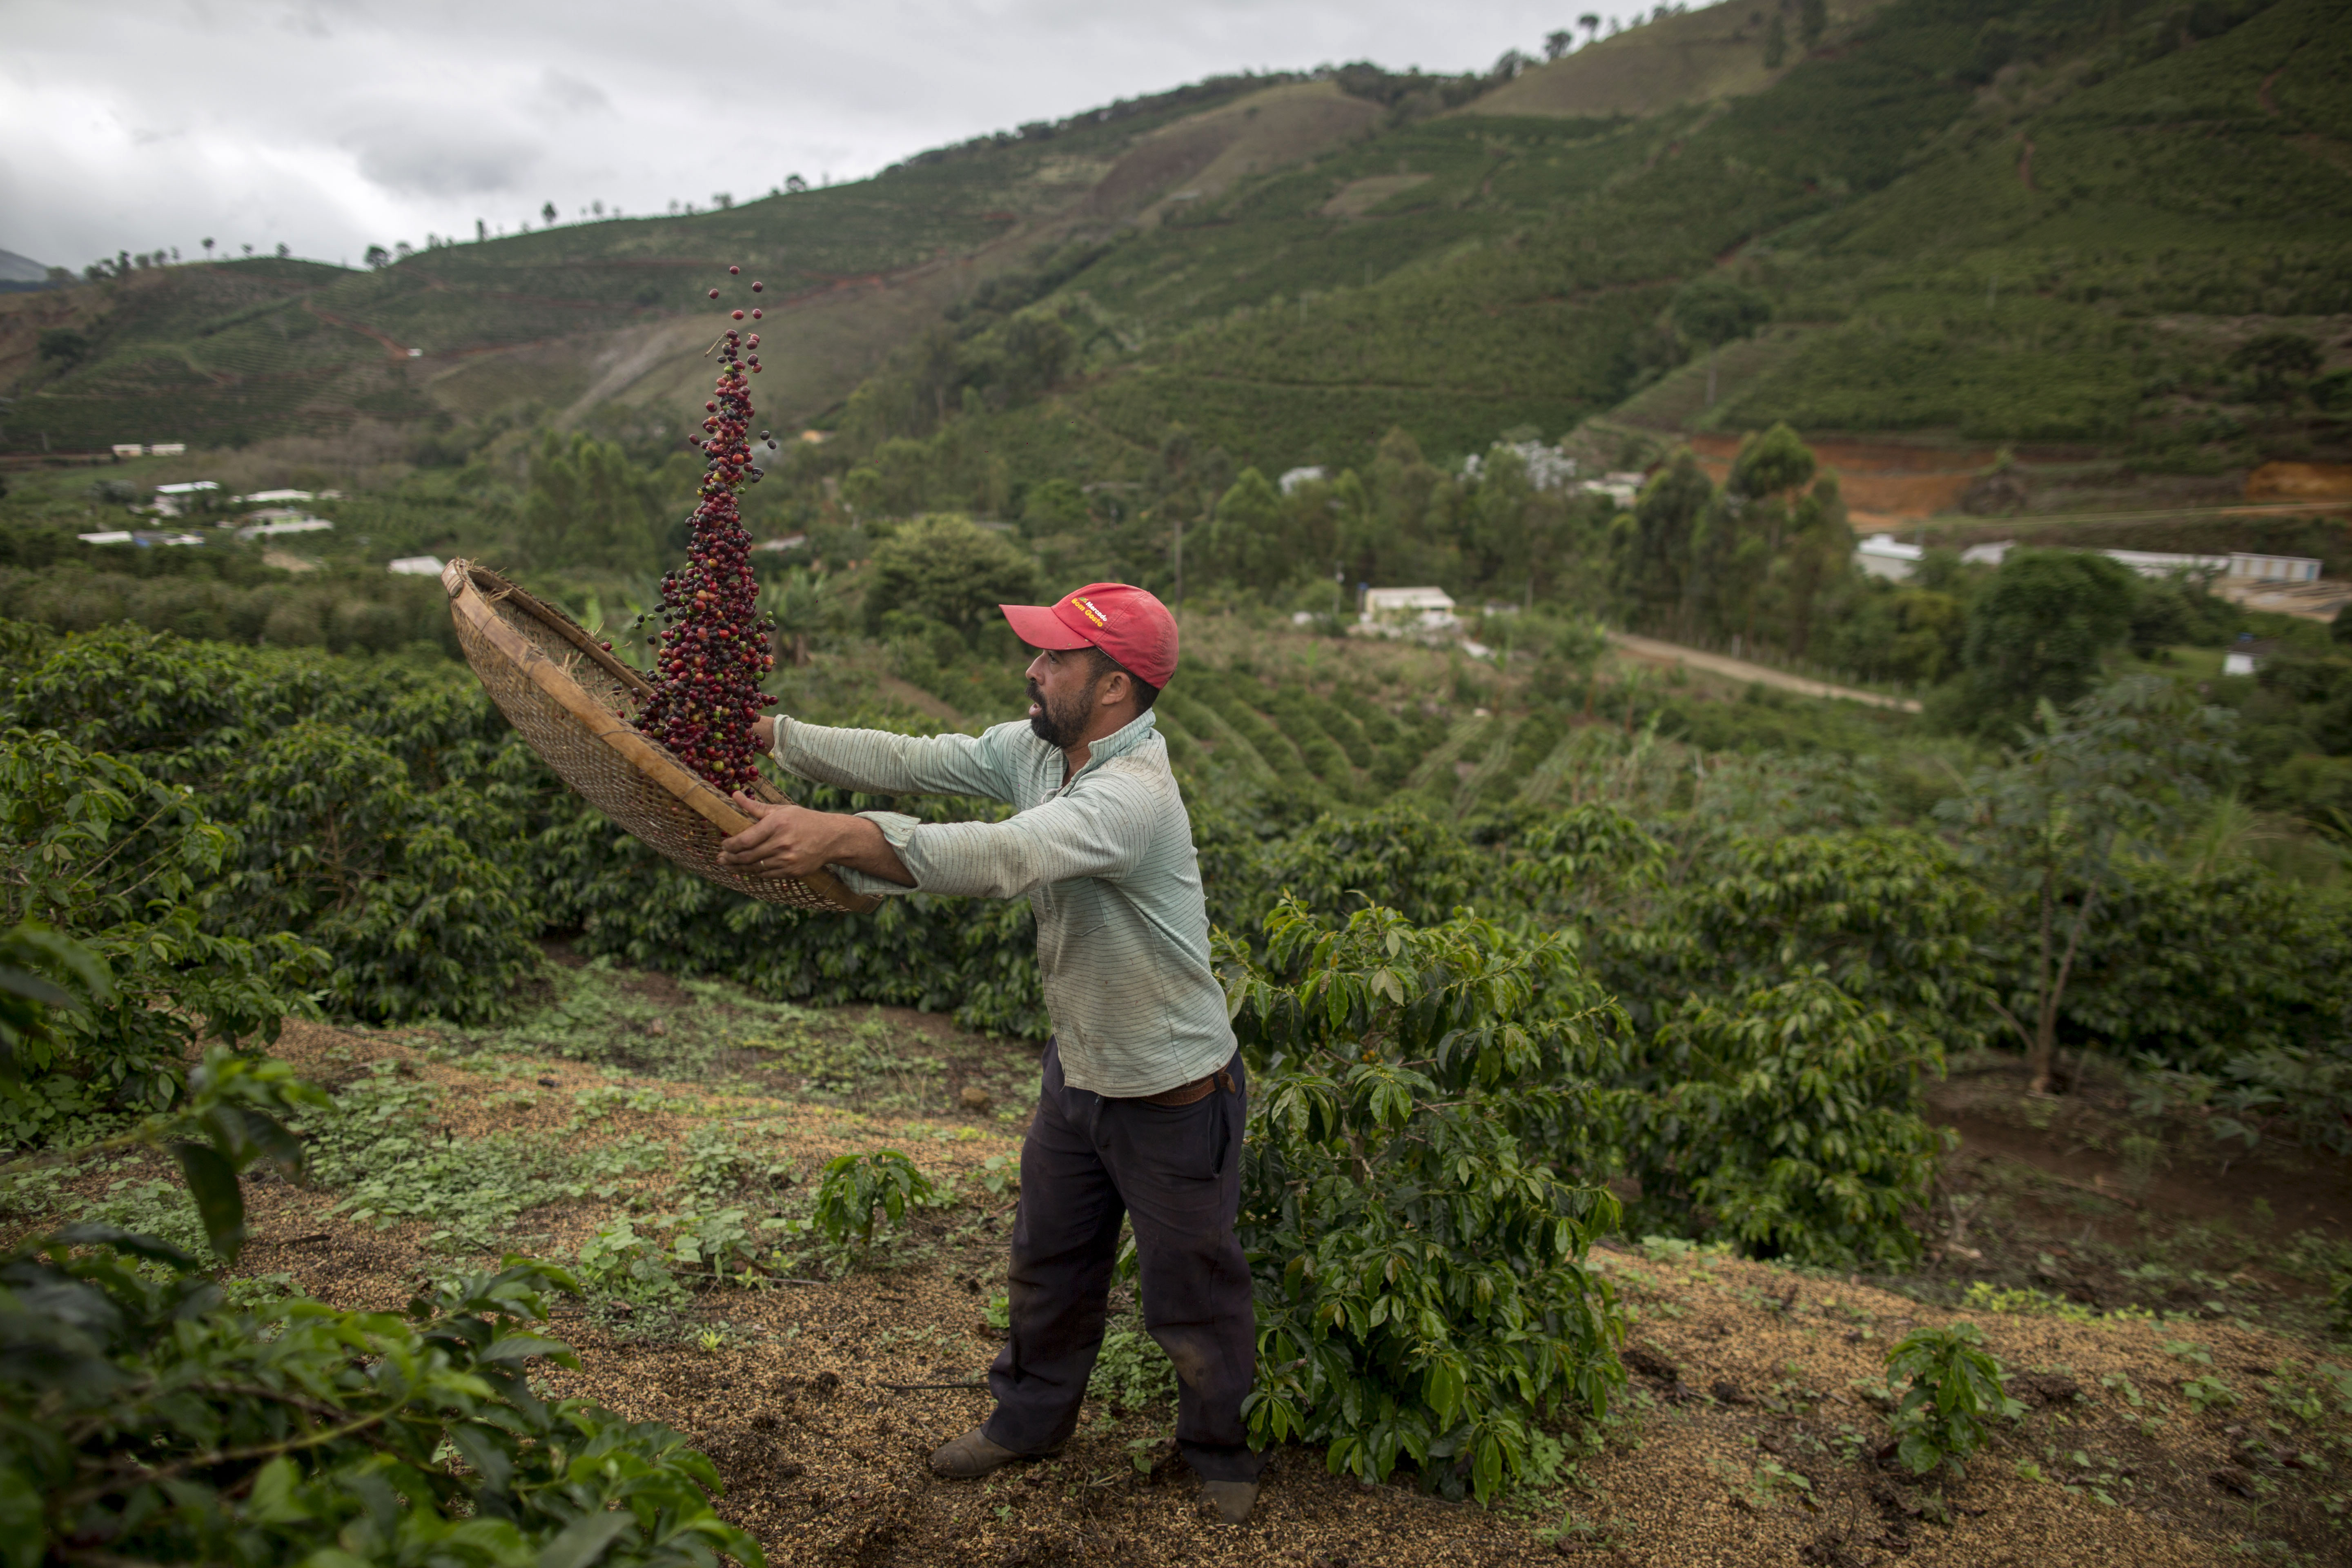 Viszlát brazil kávé, helló amerikai kesudió: az USA lehet az éghajlatváltozás legnagyobb nyertese a mezőgazdaságban